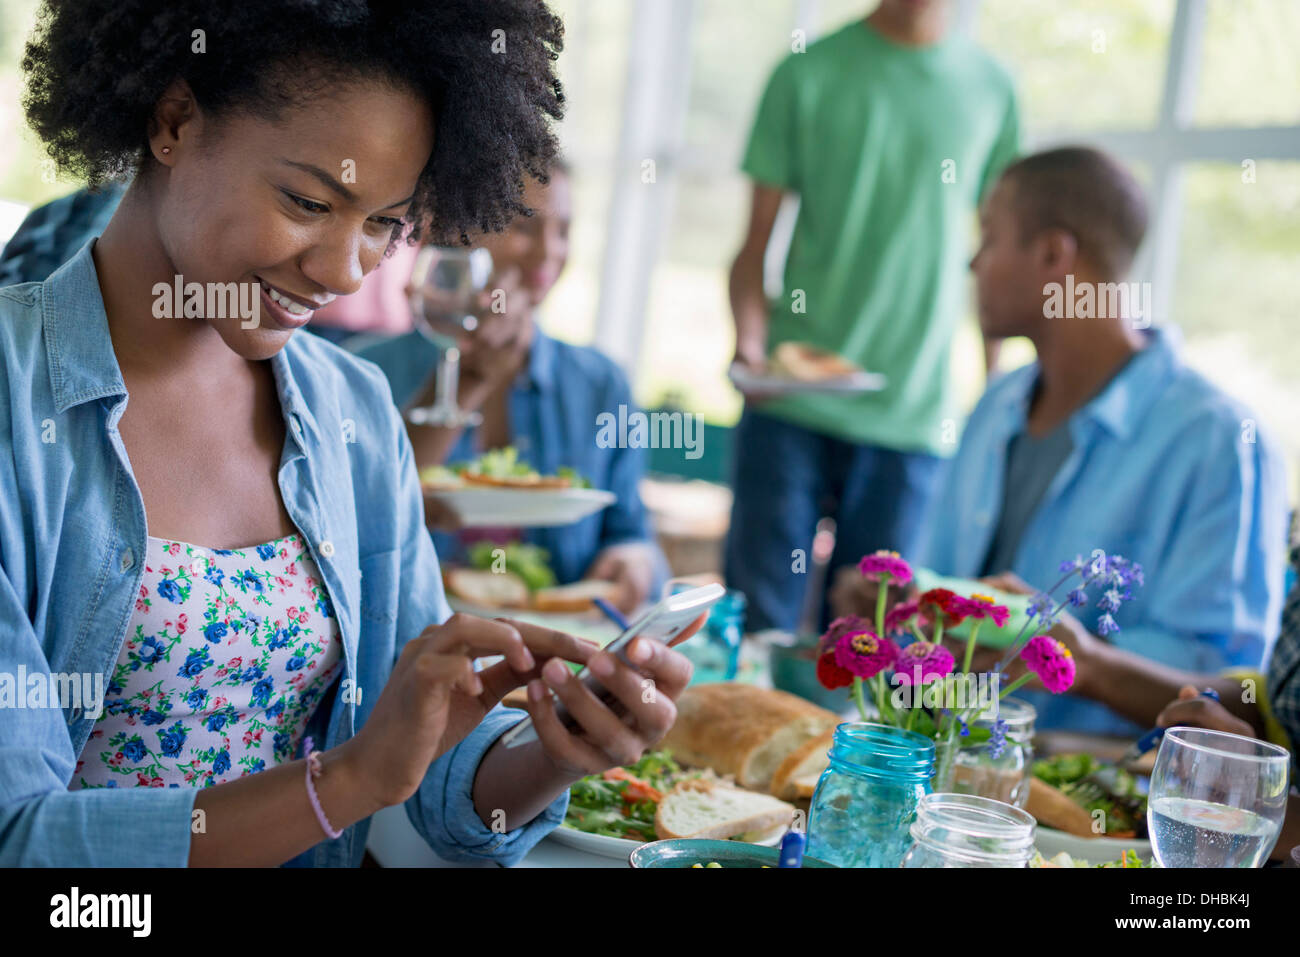 Eine Gruppe von Frauen und Männern an einem Tisch, die gemeinsame Mahlzeit in einer Landhausküche. Stockfoto